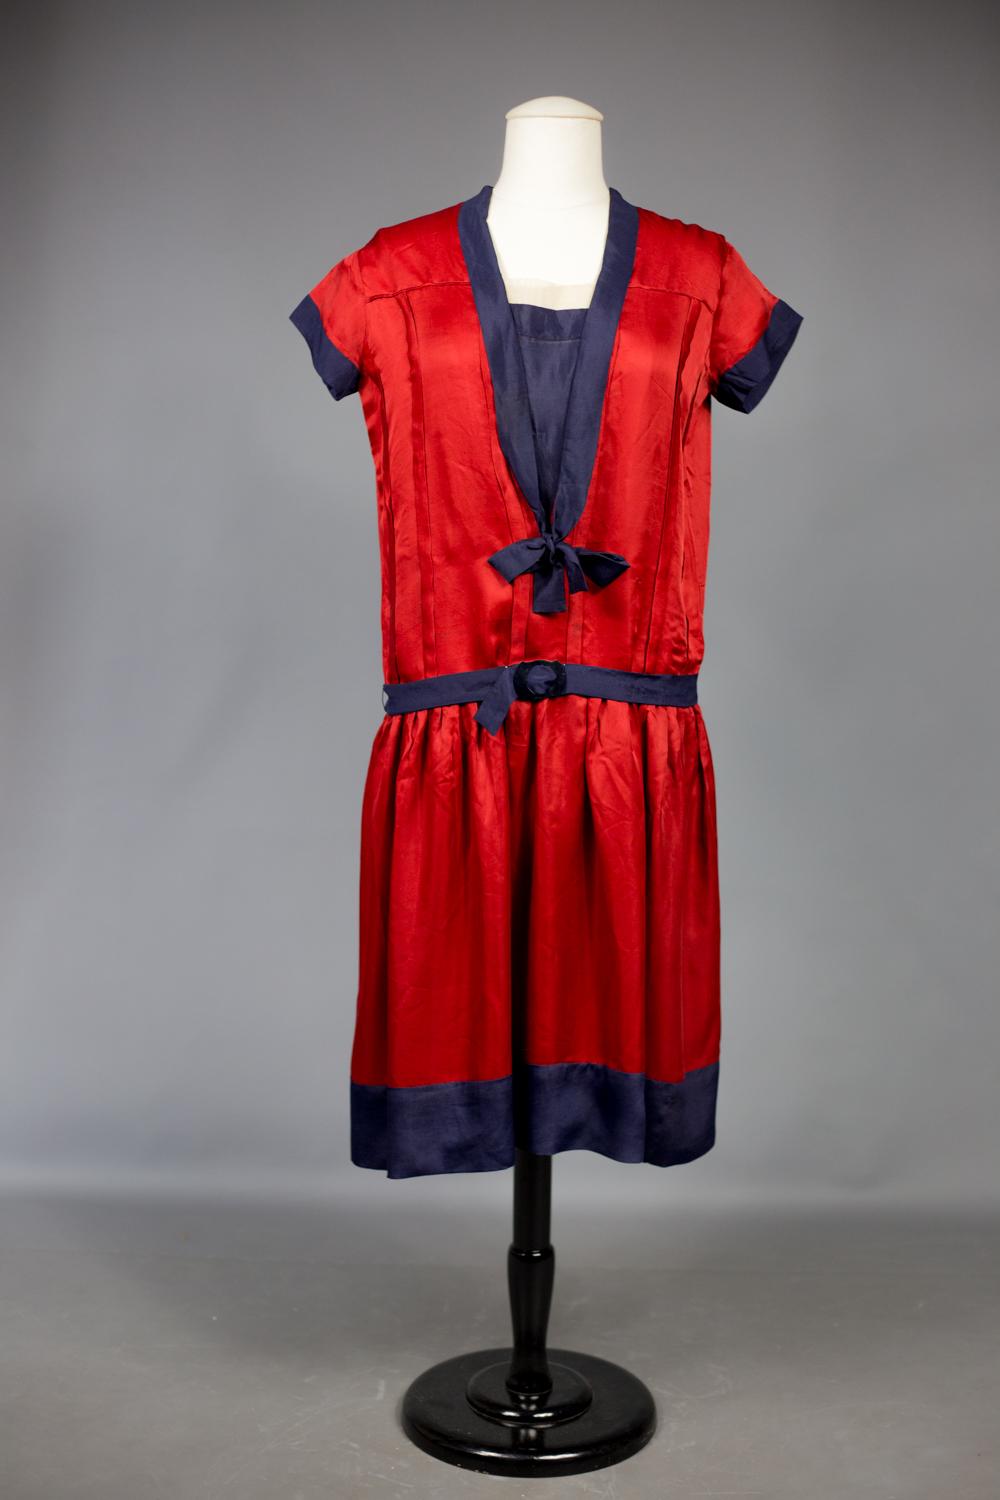 Circa 1920/1925
France
 
Belle robe de marin en satin Duchesse rouge cerise dans l'esprit patriotique de la France après la Première Guerre mondiale. Robe droite à manches courtes, plissée sur le buste et soulignée d'un crêpe bleu marine. Col marin